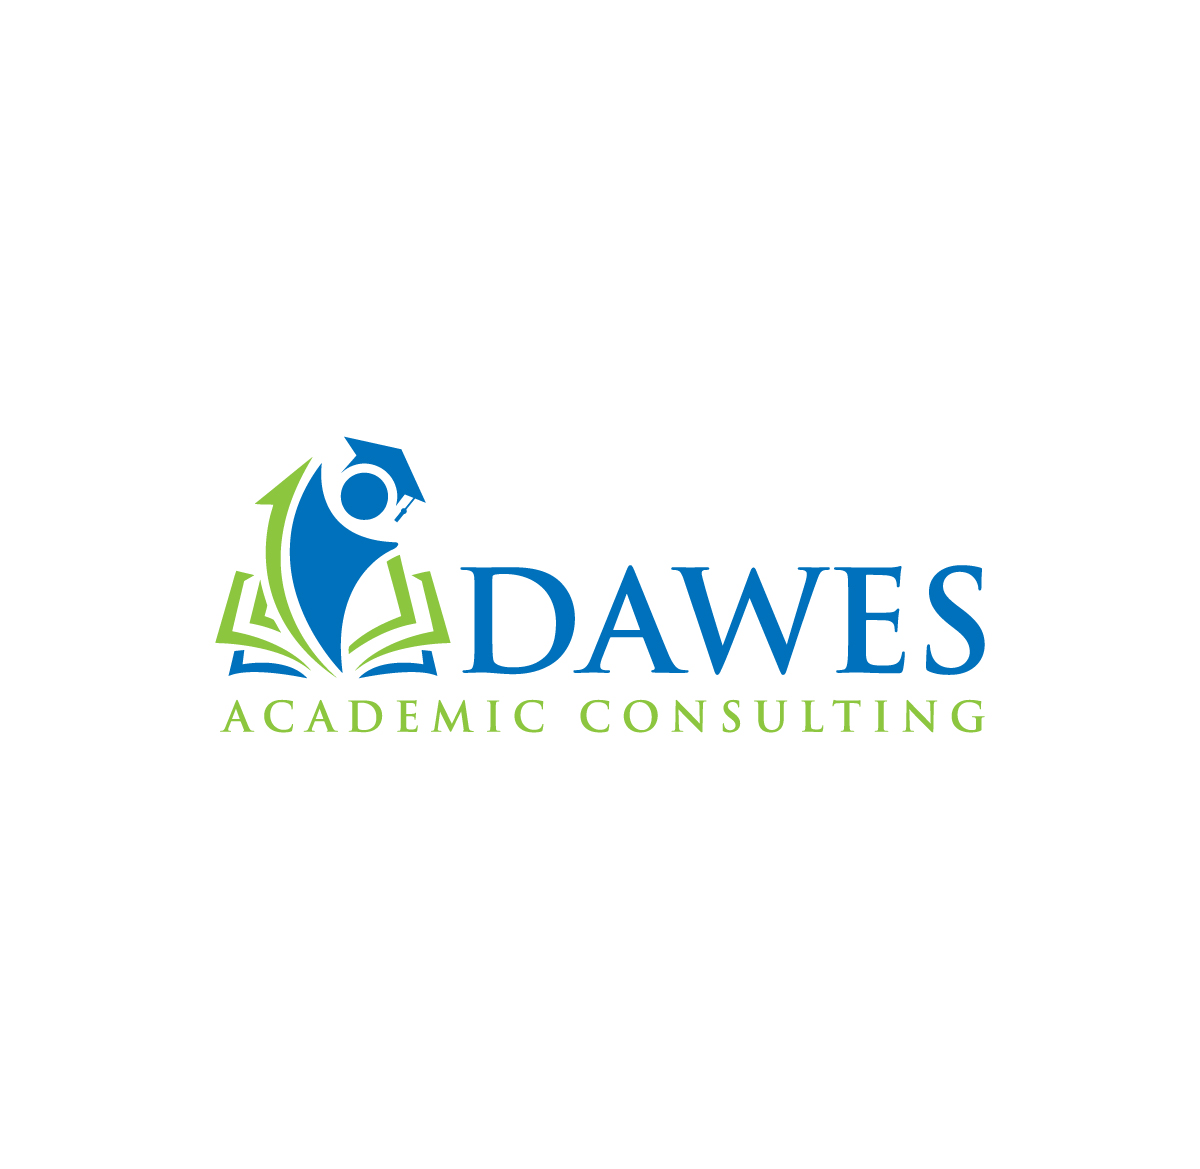 Dawes Academic Consultant logo